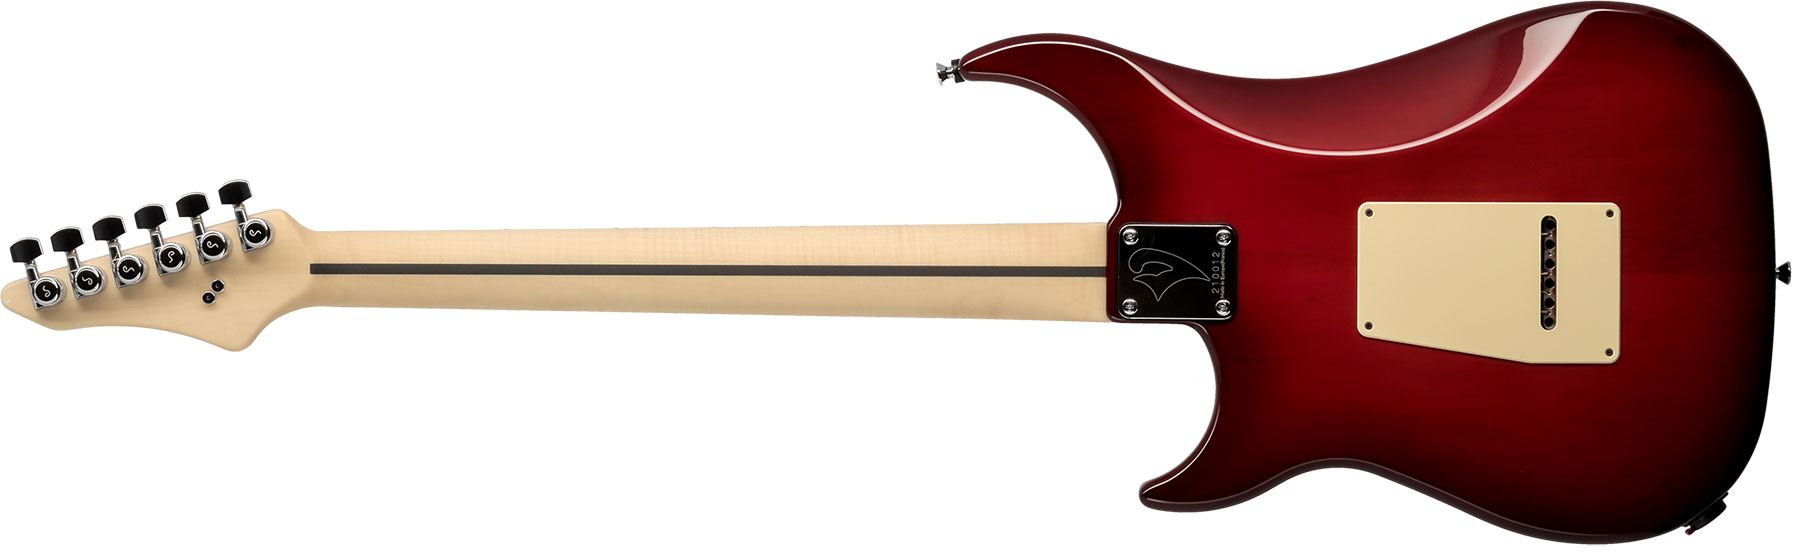 Vigier Excalibur Supraa Hsh Trem Mn - Clear Red - E-Gitarre in Str-Form - Variation 1